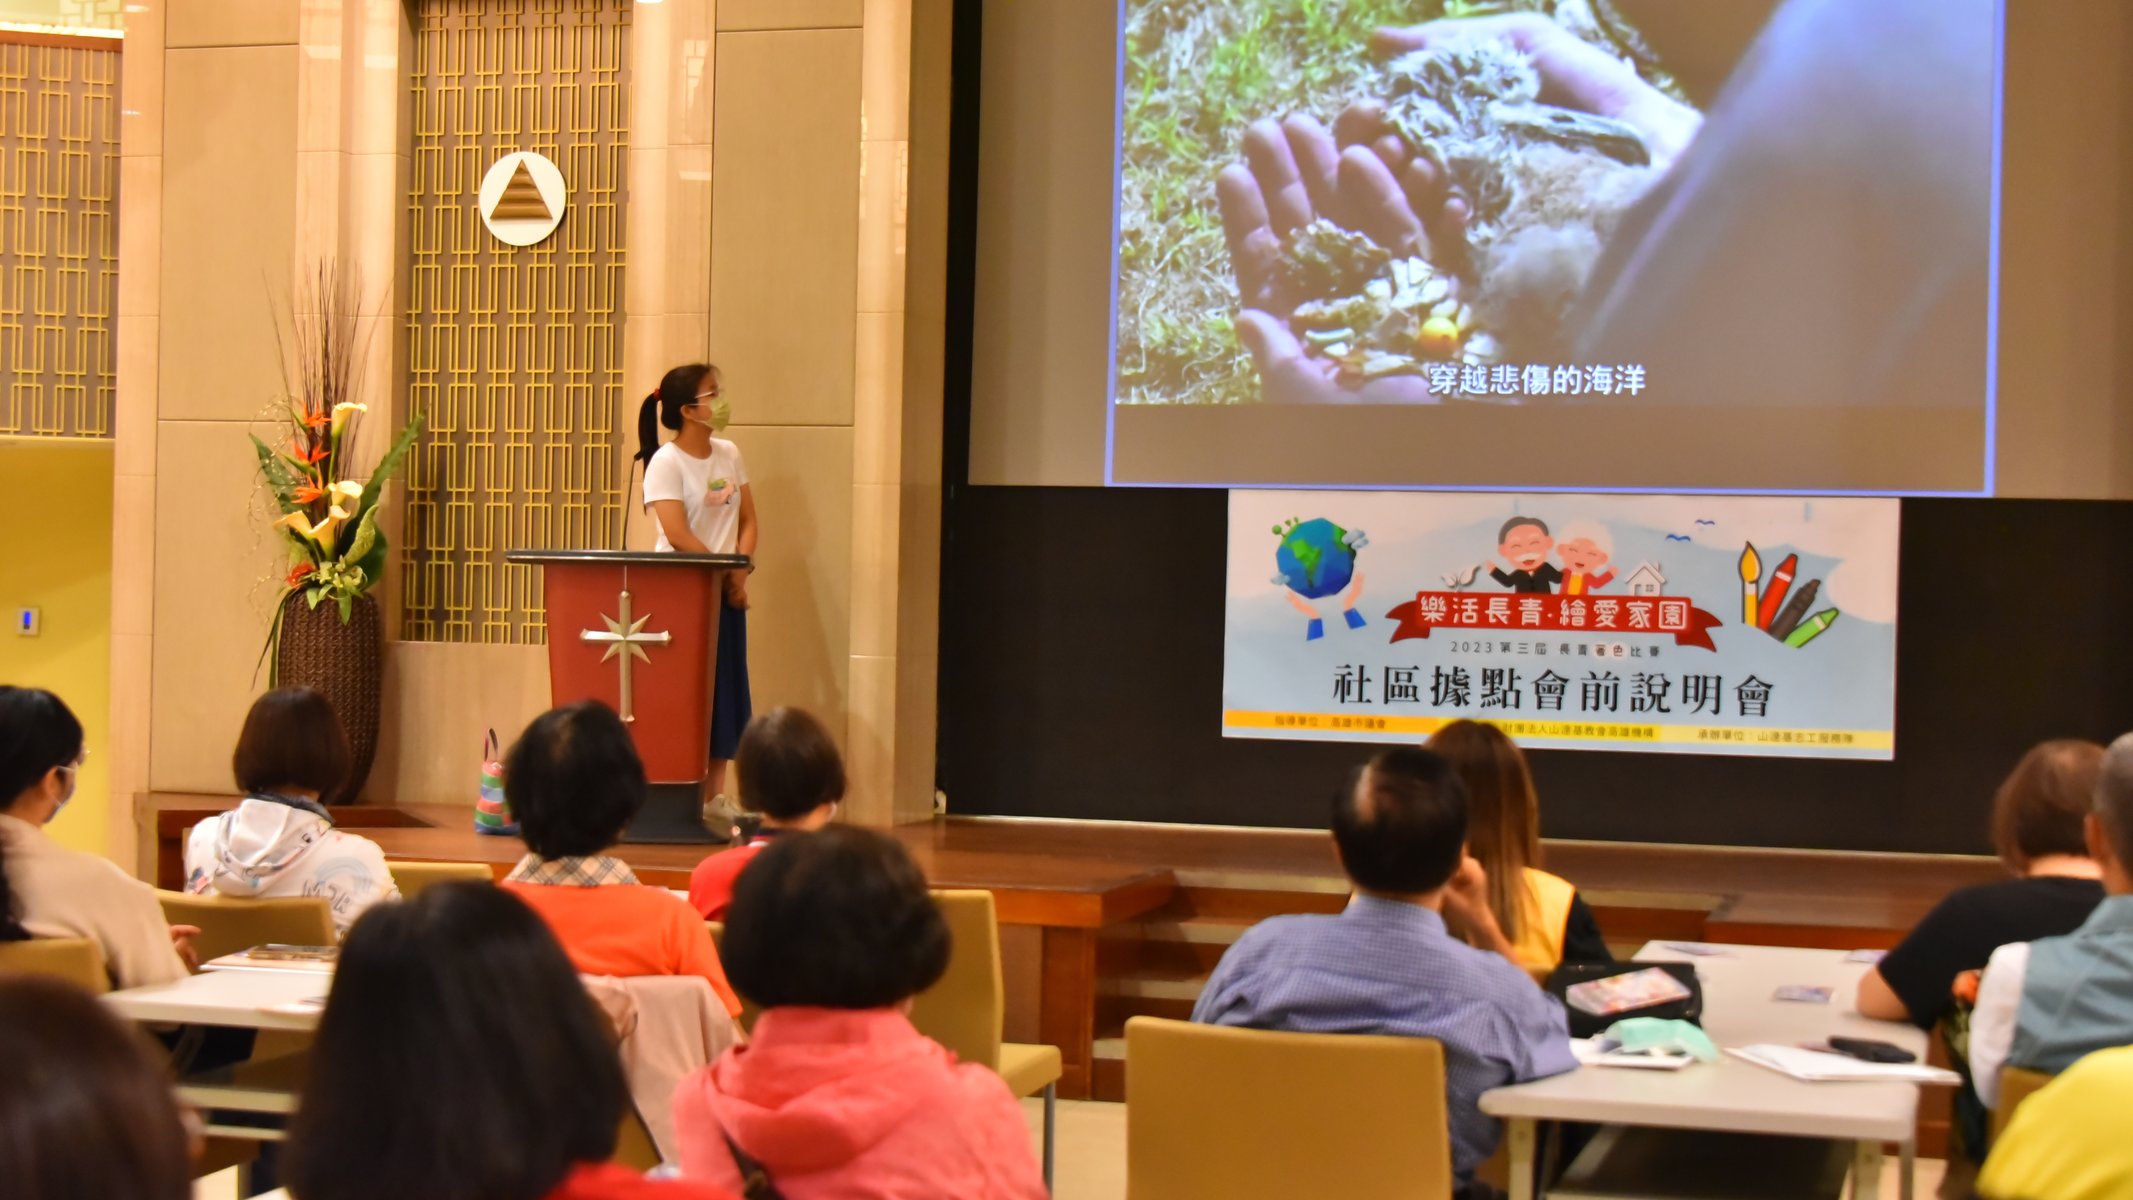 Den otevřených dveří Světového dne životního prostředí v Scientologické církvi Kaohsiung zahrnoval prezentaci na zvýšení povědomí o otázkách životního prostředí